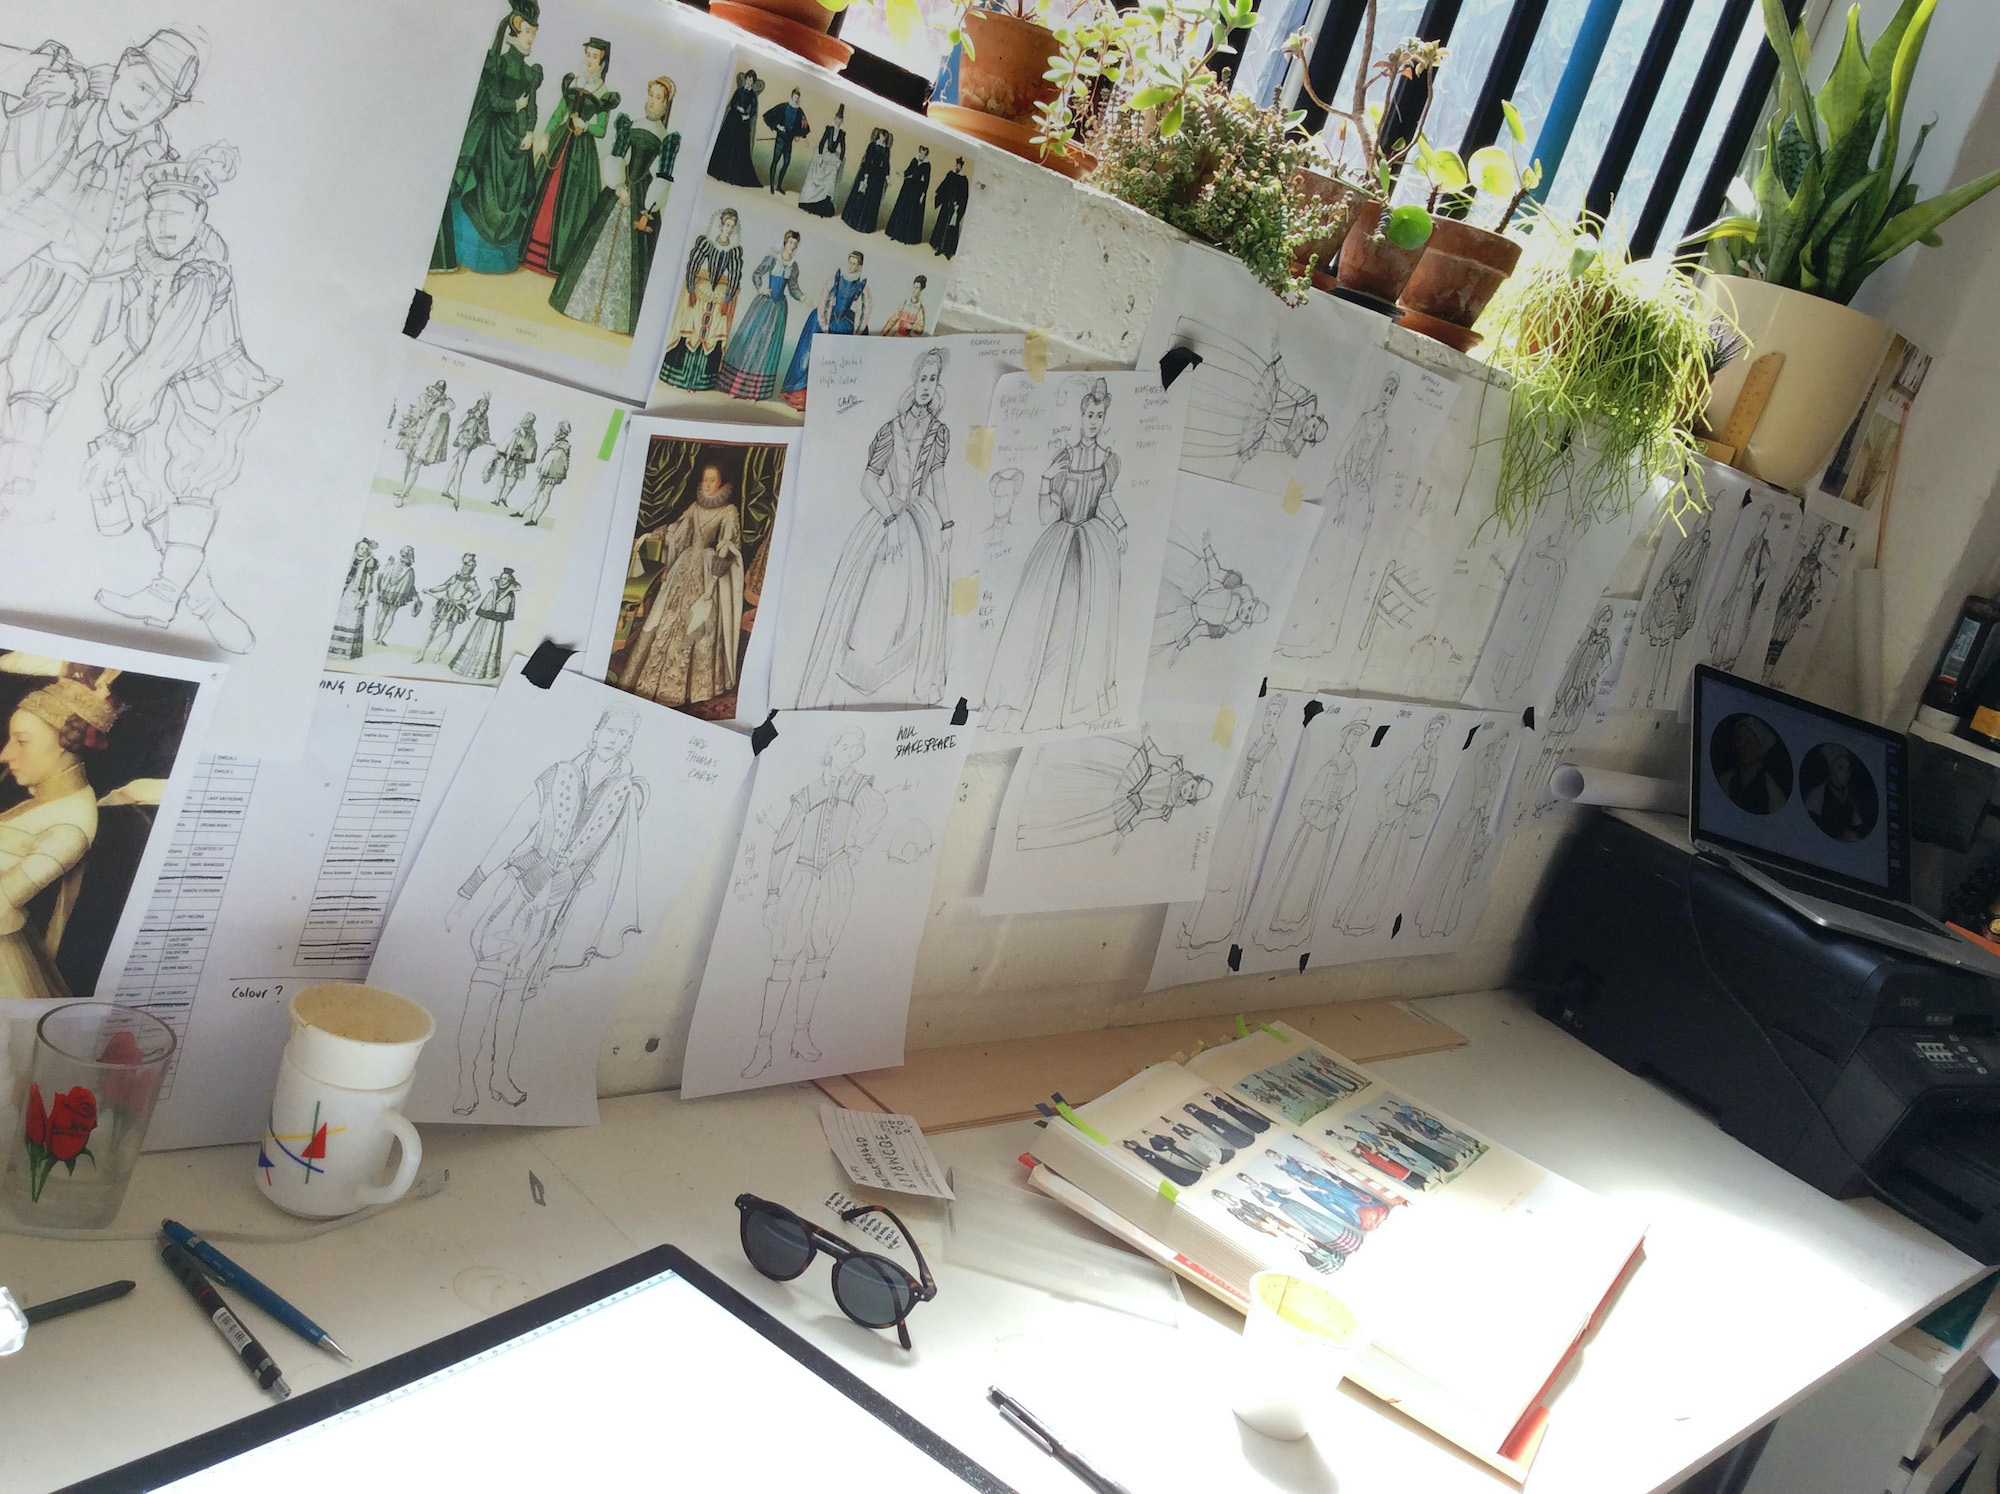 A photo of a designer’s desk shows sketches, a sketch book, a mug, a glass and pens